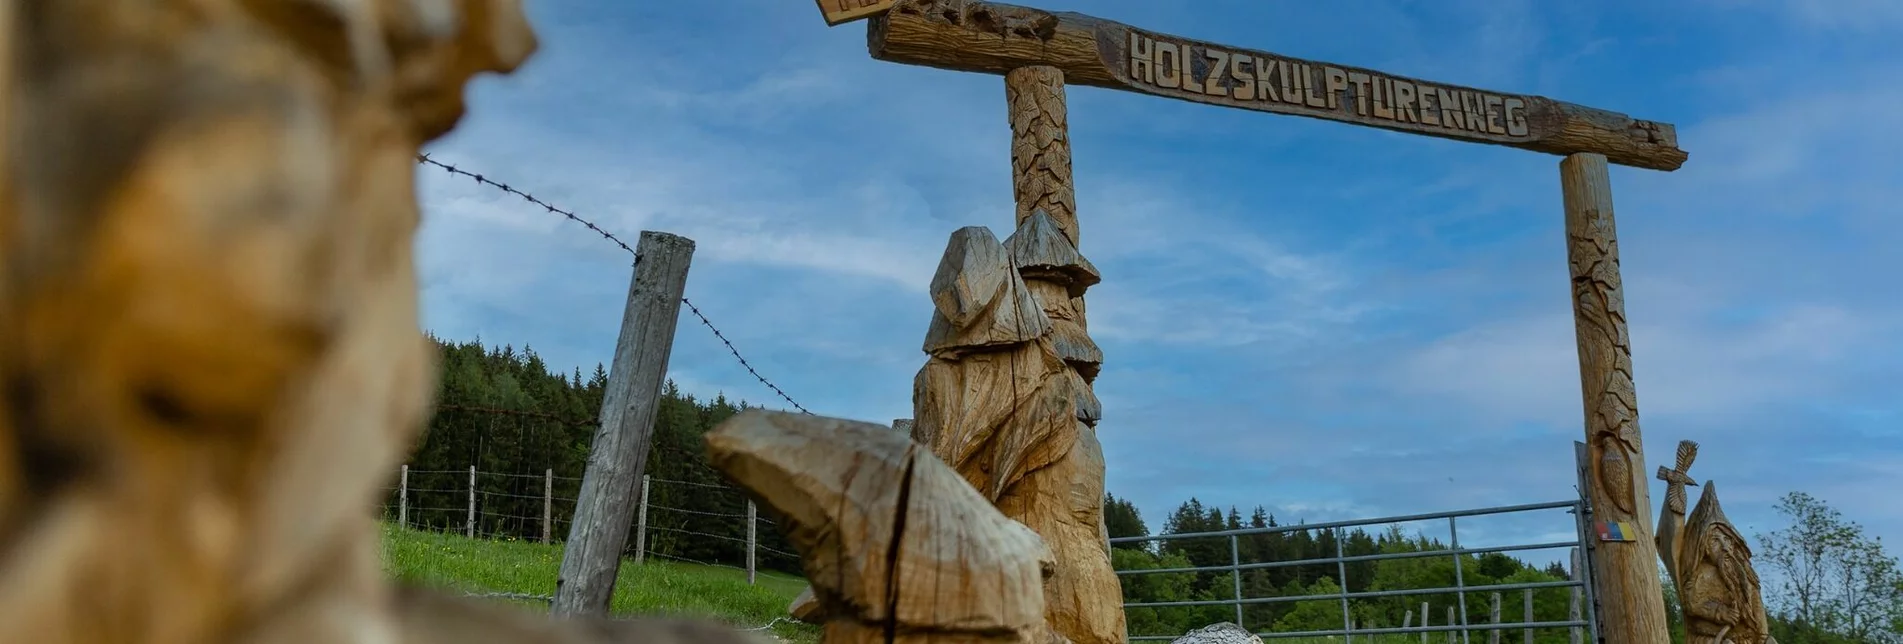 Hiking route Nechnitz-Runde über Holzskulpturenweg, Nechnitz - Touren-Impression #1 | © Almenlandwirt Haider